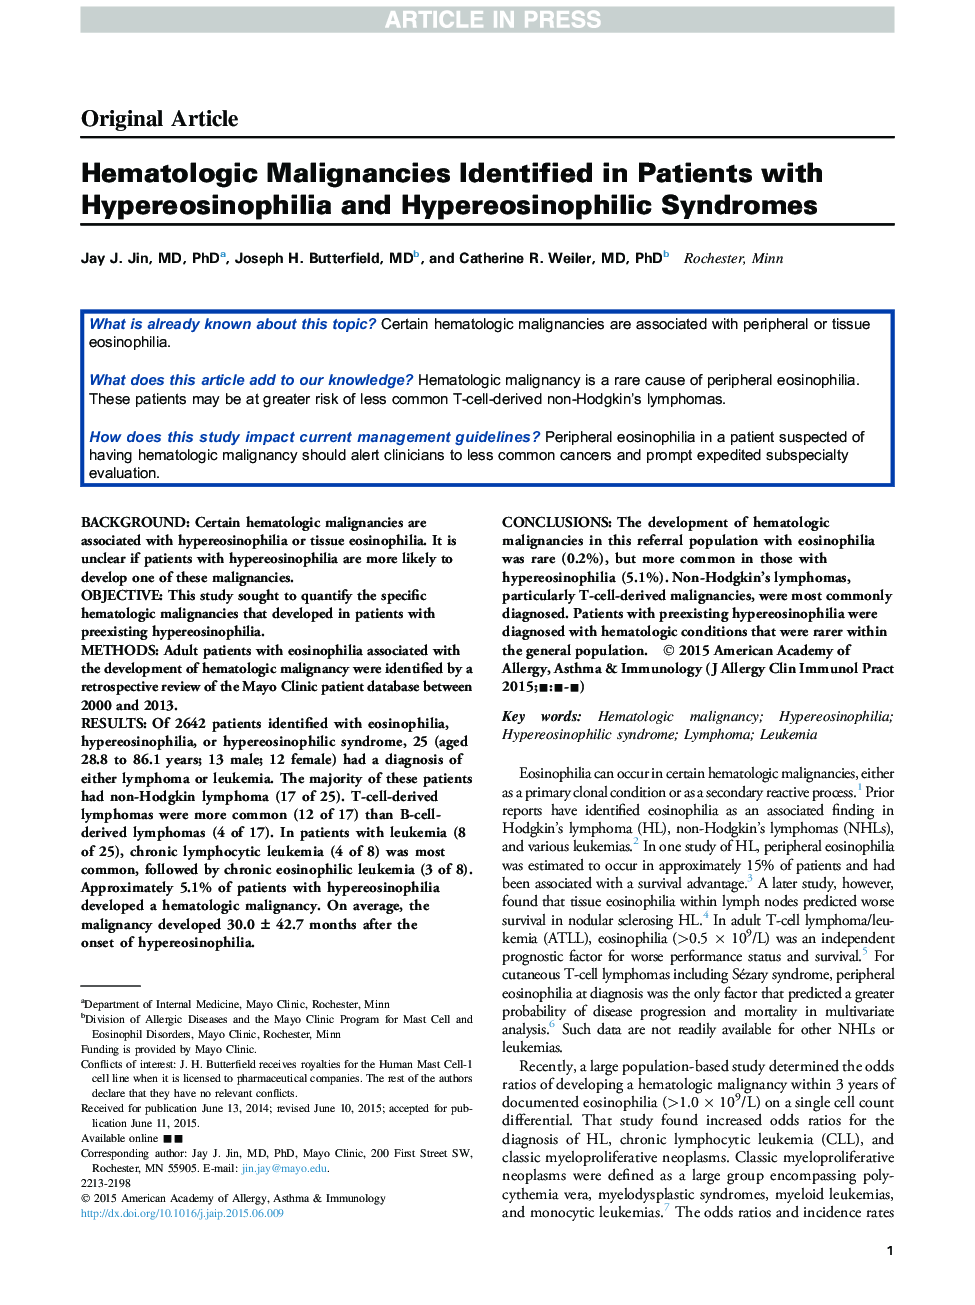 بدخیمی های هماتولوژیک شناسایی شده در بیماران مبتلا به هیپرئروسینوفیلیا و سندرم هیپرئوزینوفیل 